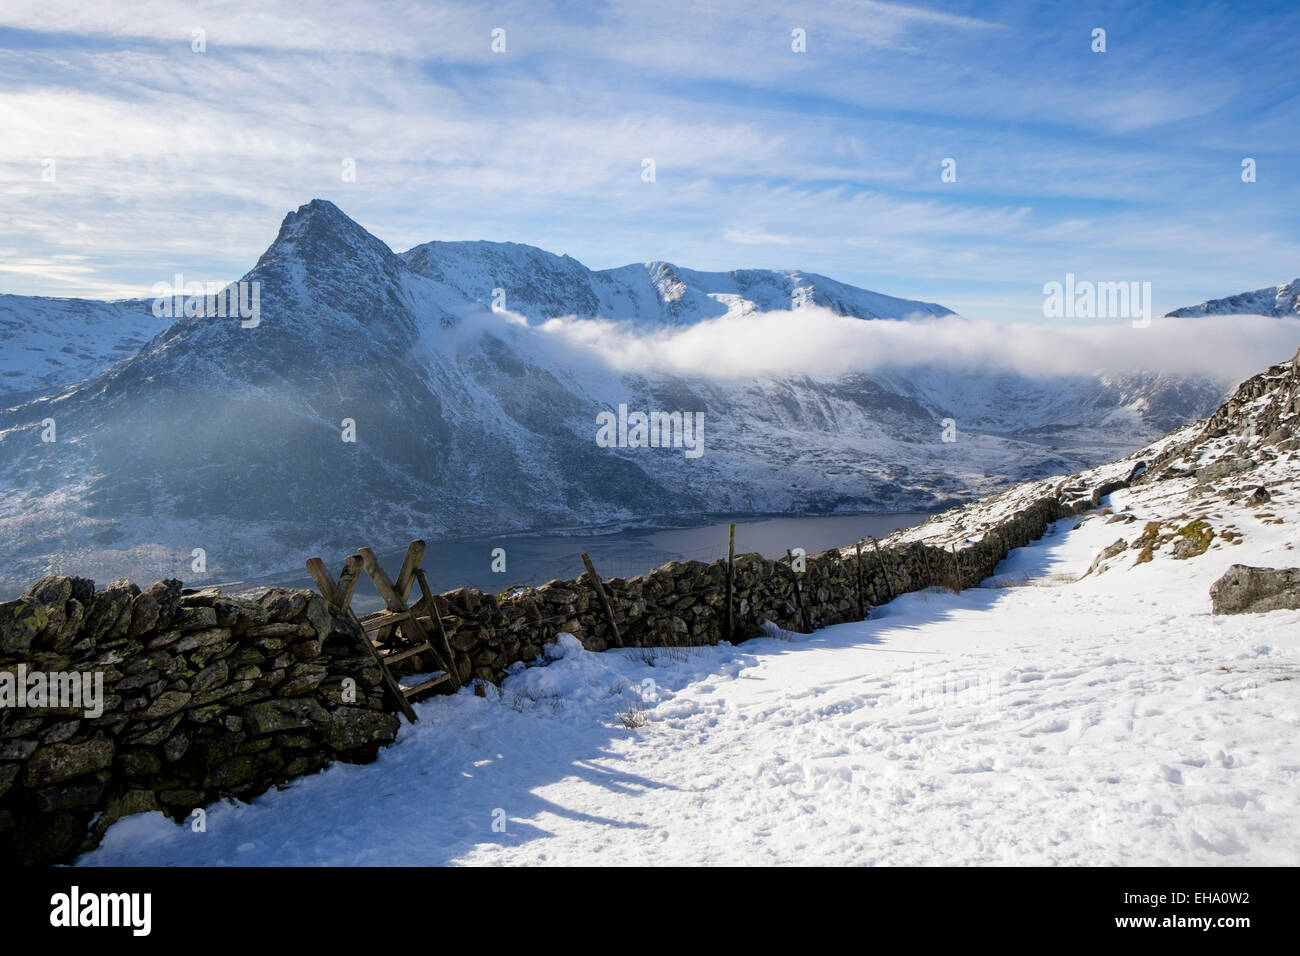 Stile de l'échelle sur mur de pierre sur le mont Carneddau Glyderau Tryfan et montagne en hiver. Ogwen Valley Parc National de Snowdonia (Eryri) Wales UK Banque D'Images